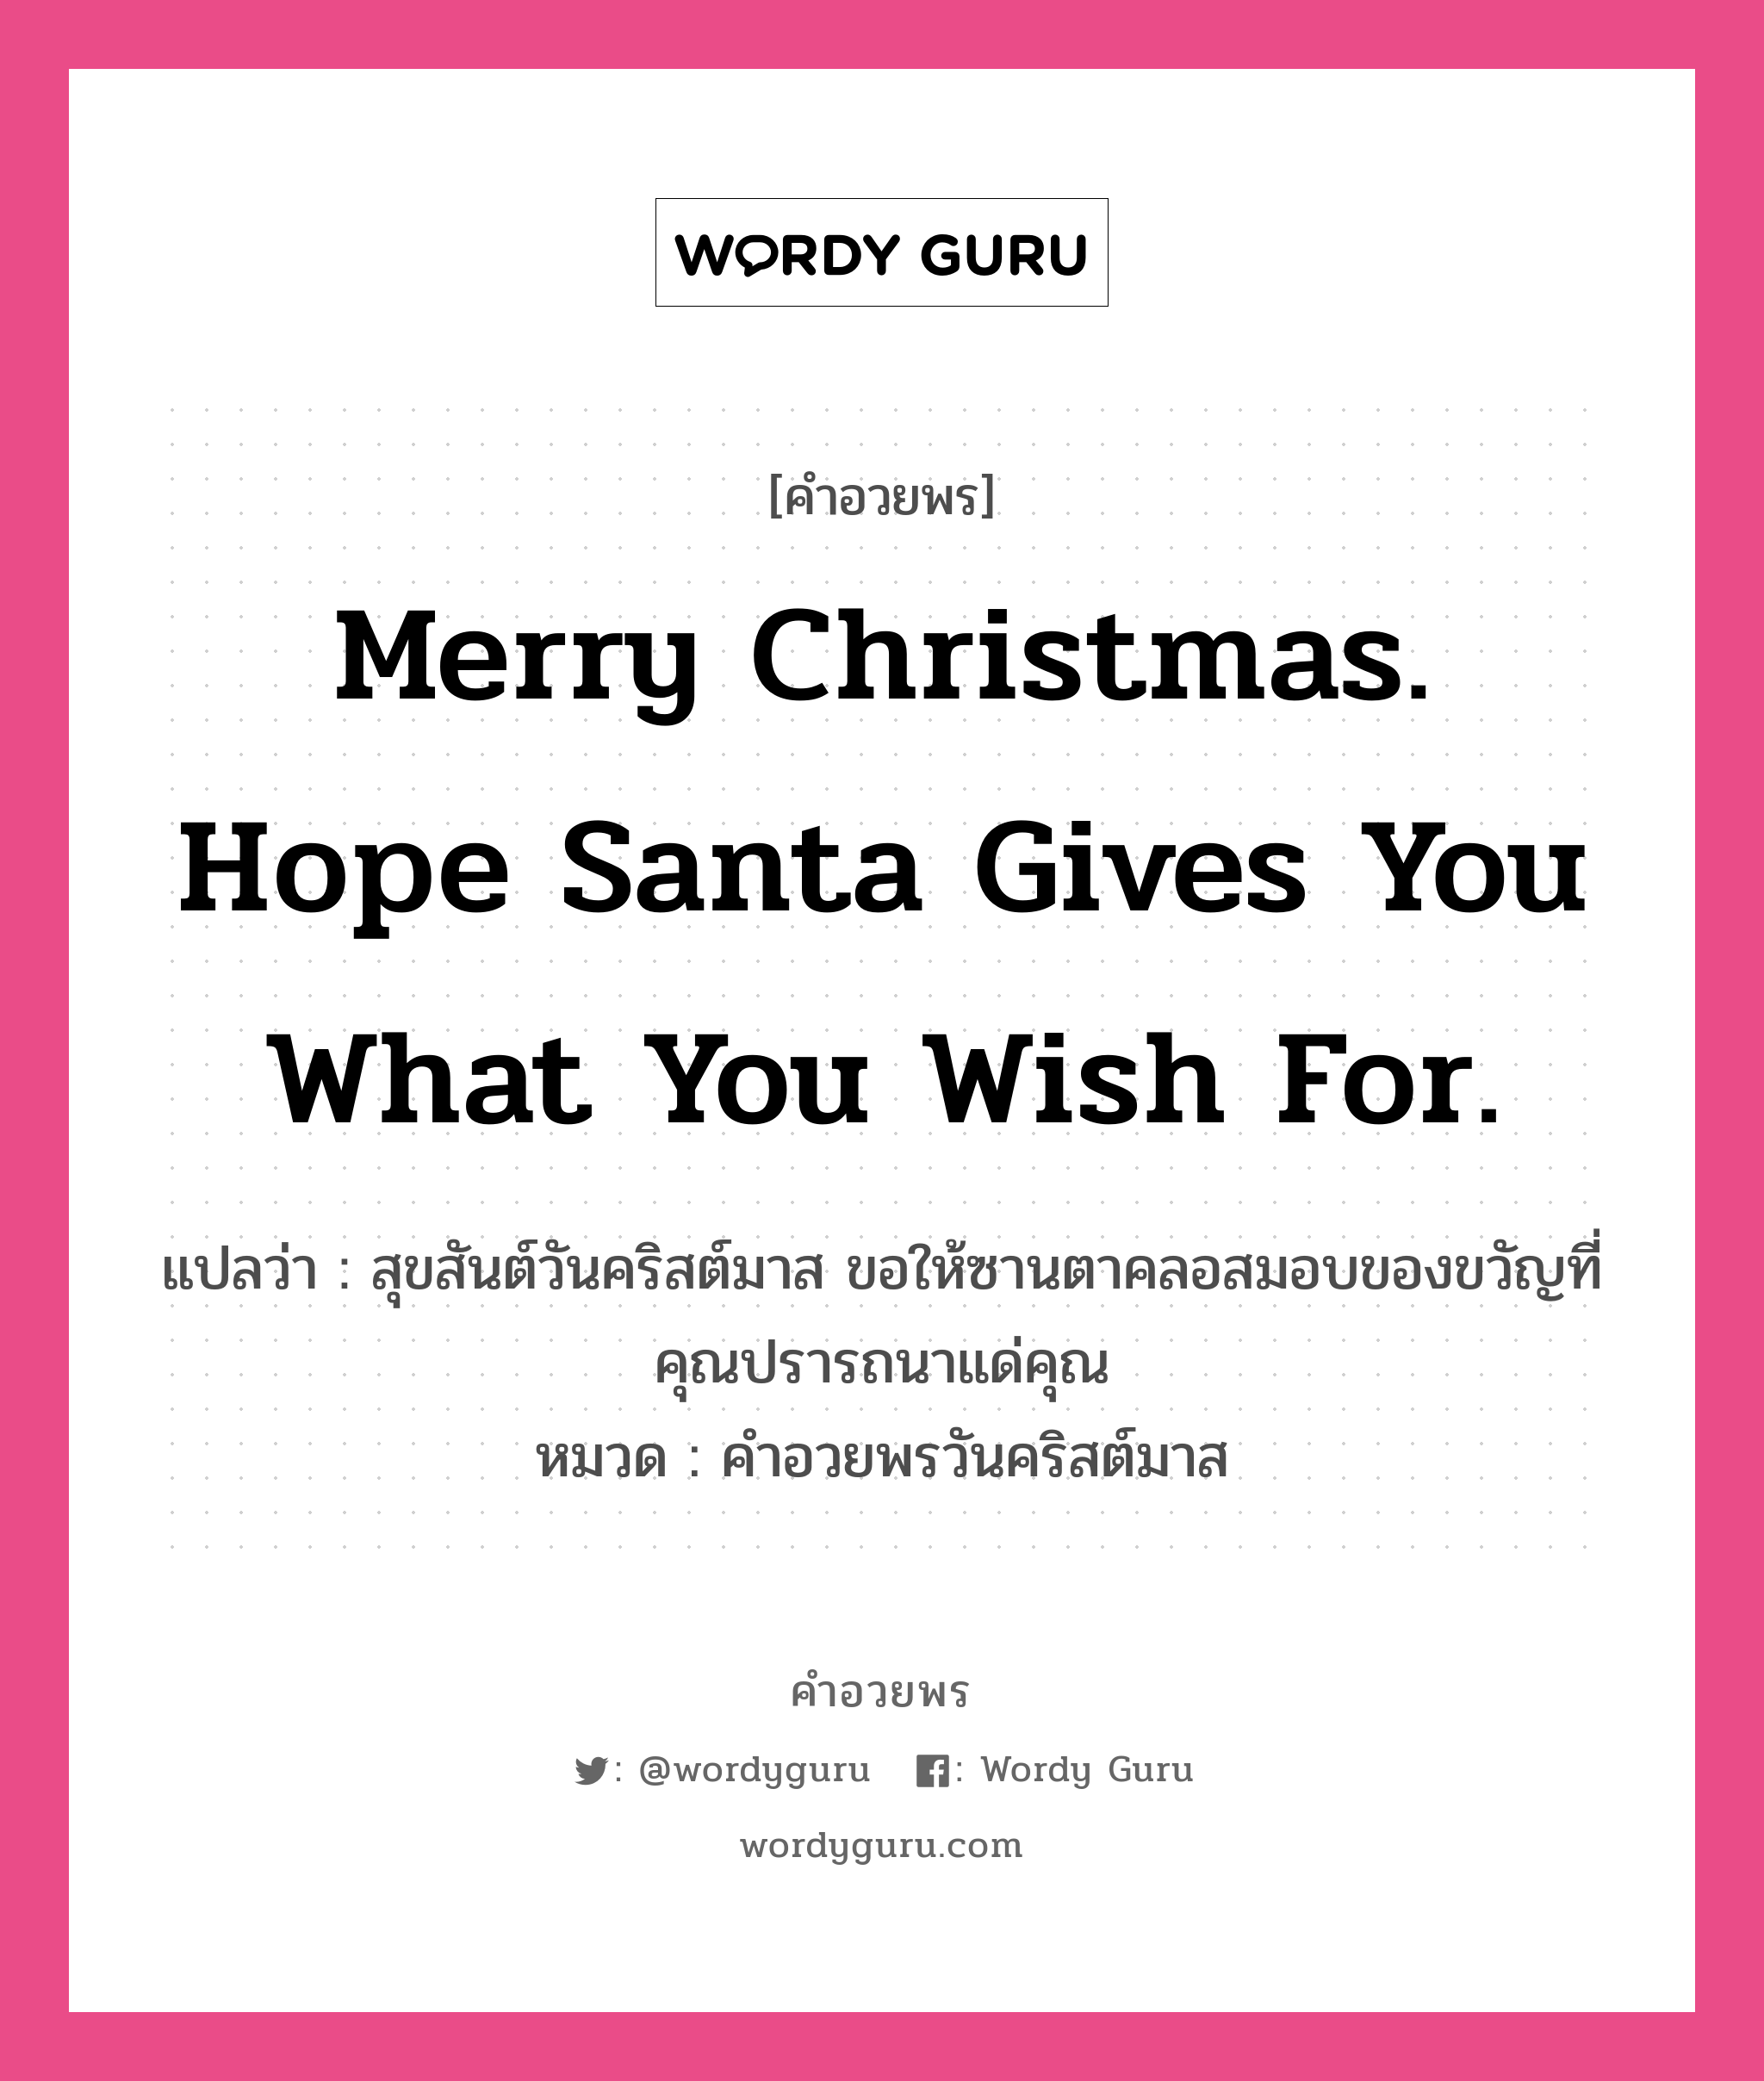 คำอวยพร Merry Christmas. Hope Santa gives you what you wish for. คืออะไร?, แปลว่า สุขสันต์วันคริสต์มาส ขอให้ซานตาคลอสมอบของขวัญที่คุณปรารถนาแด่คุณ หมวด คำอวยพรวันคริสต์มาส หมวด คำอวยพรวันคริสต์มาส